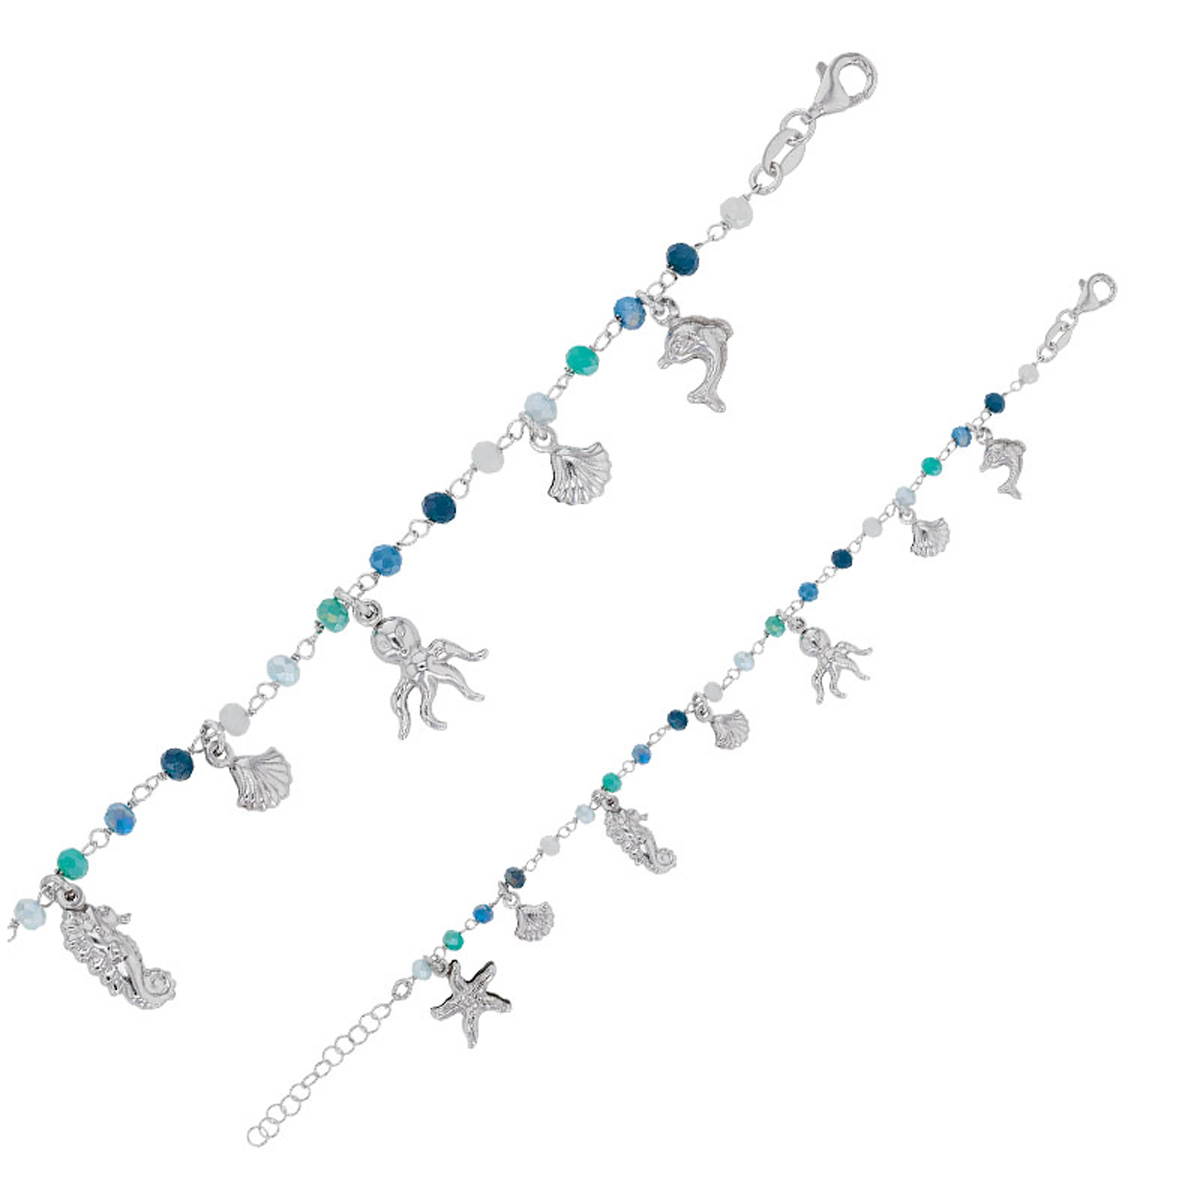 Bracelet Argent artisanal \'Monde Marin\' turquoise bleu argenté (rhodié) - 13x7 mm (hippocampe) - [R2854]